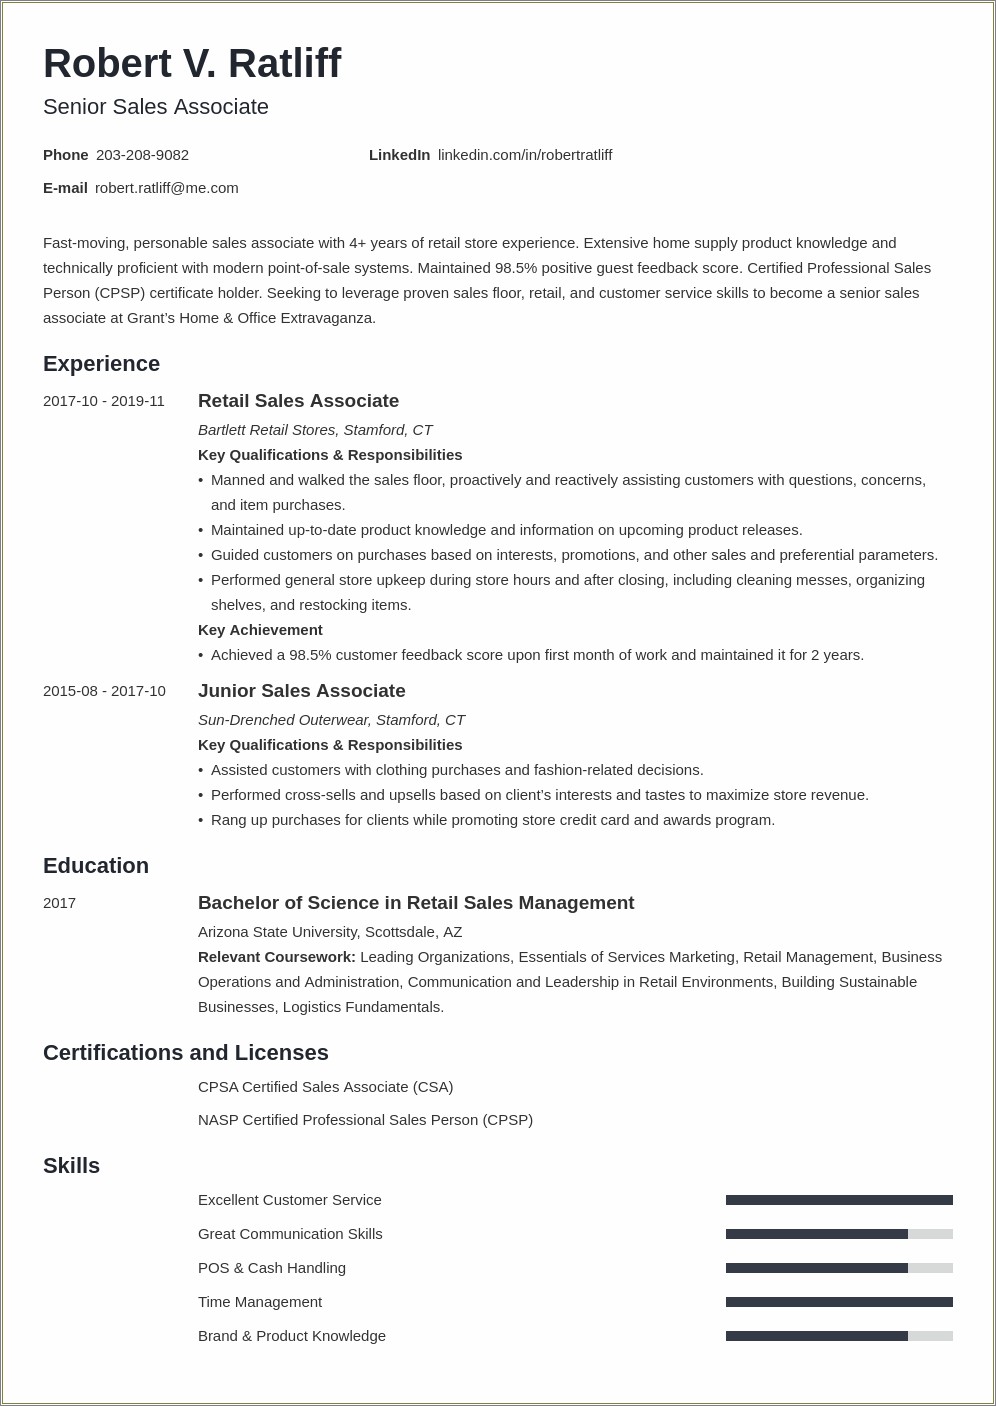 Job Description Resume For Best Buy Manager